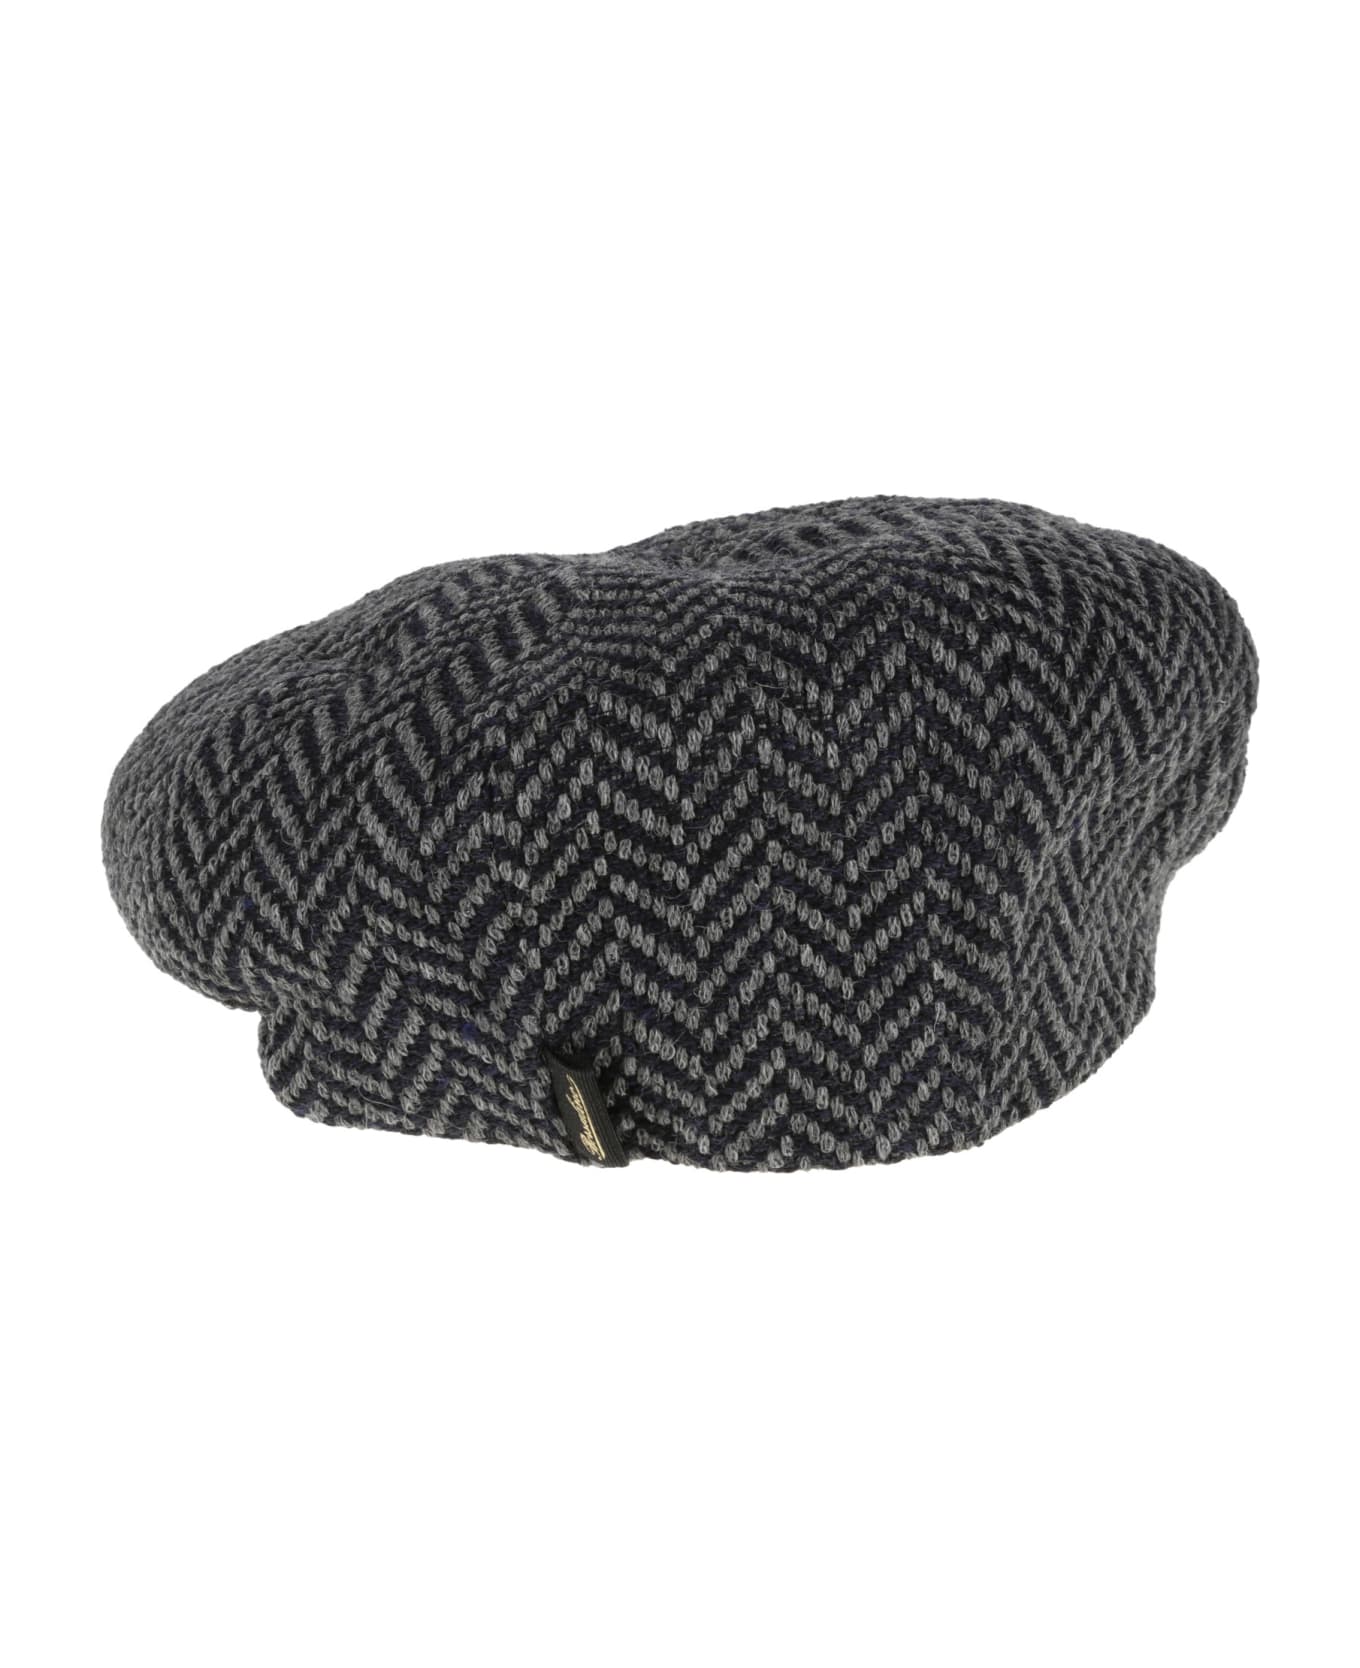 Borsalino Eight Piece Cap - A 帽子